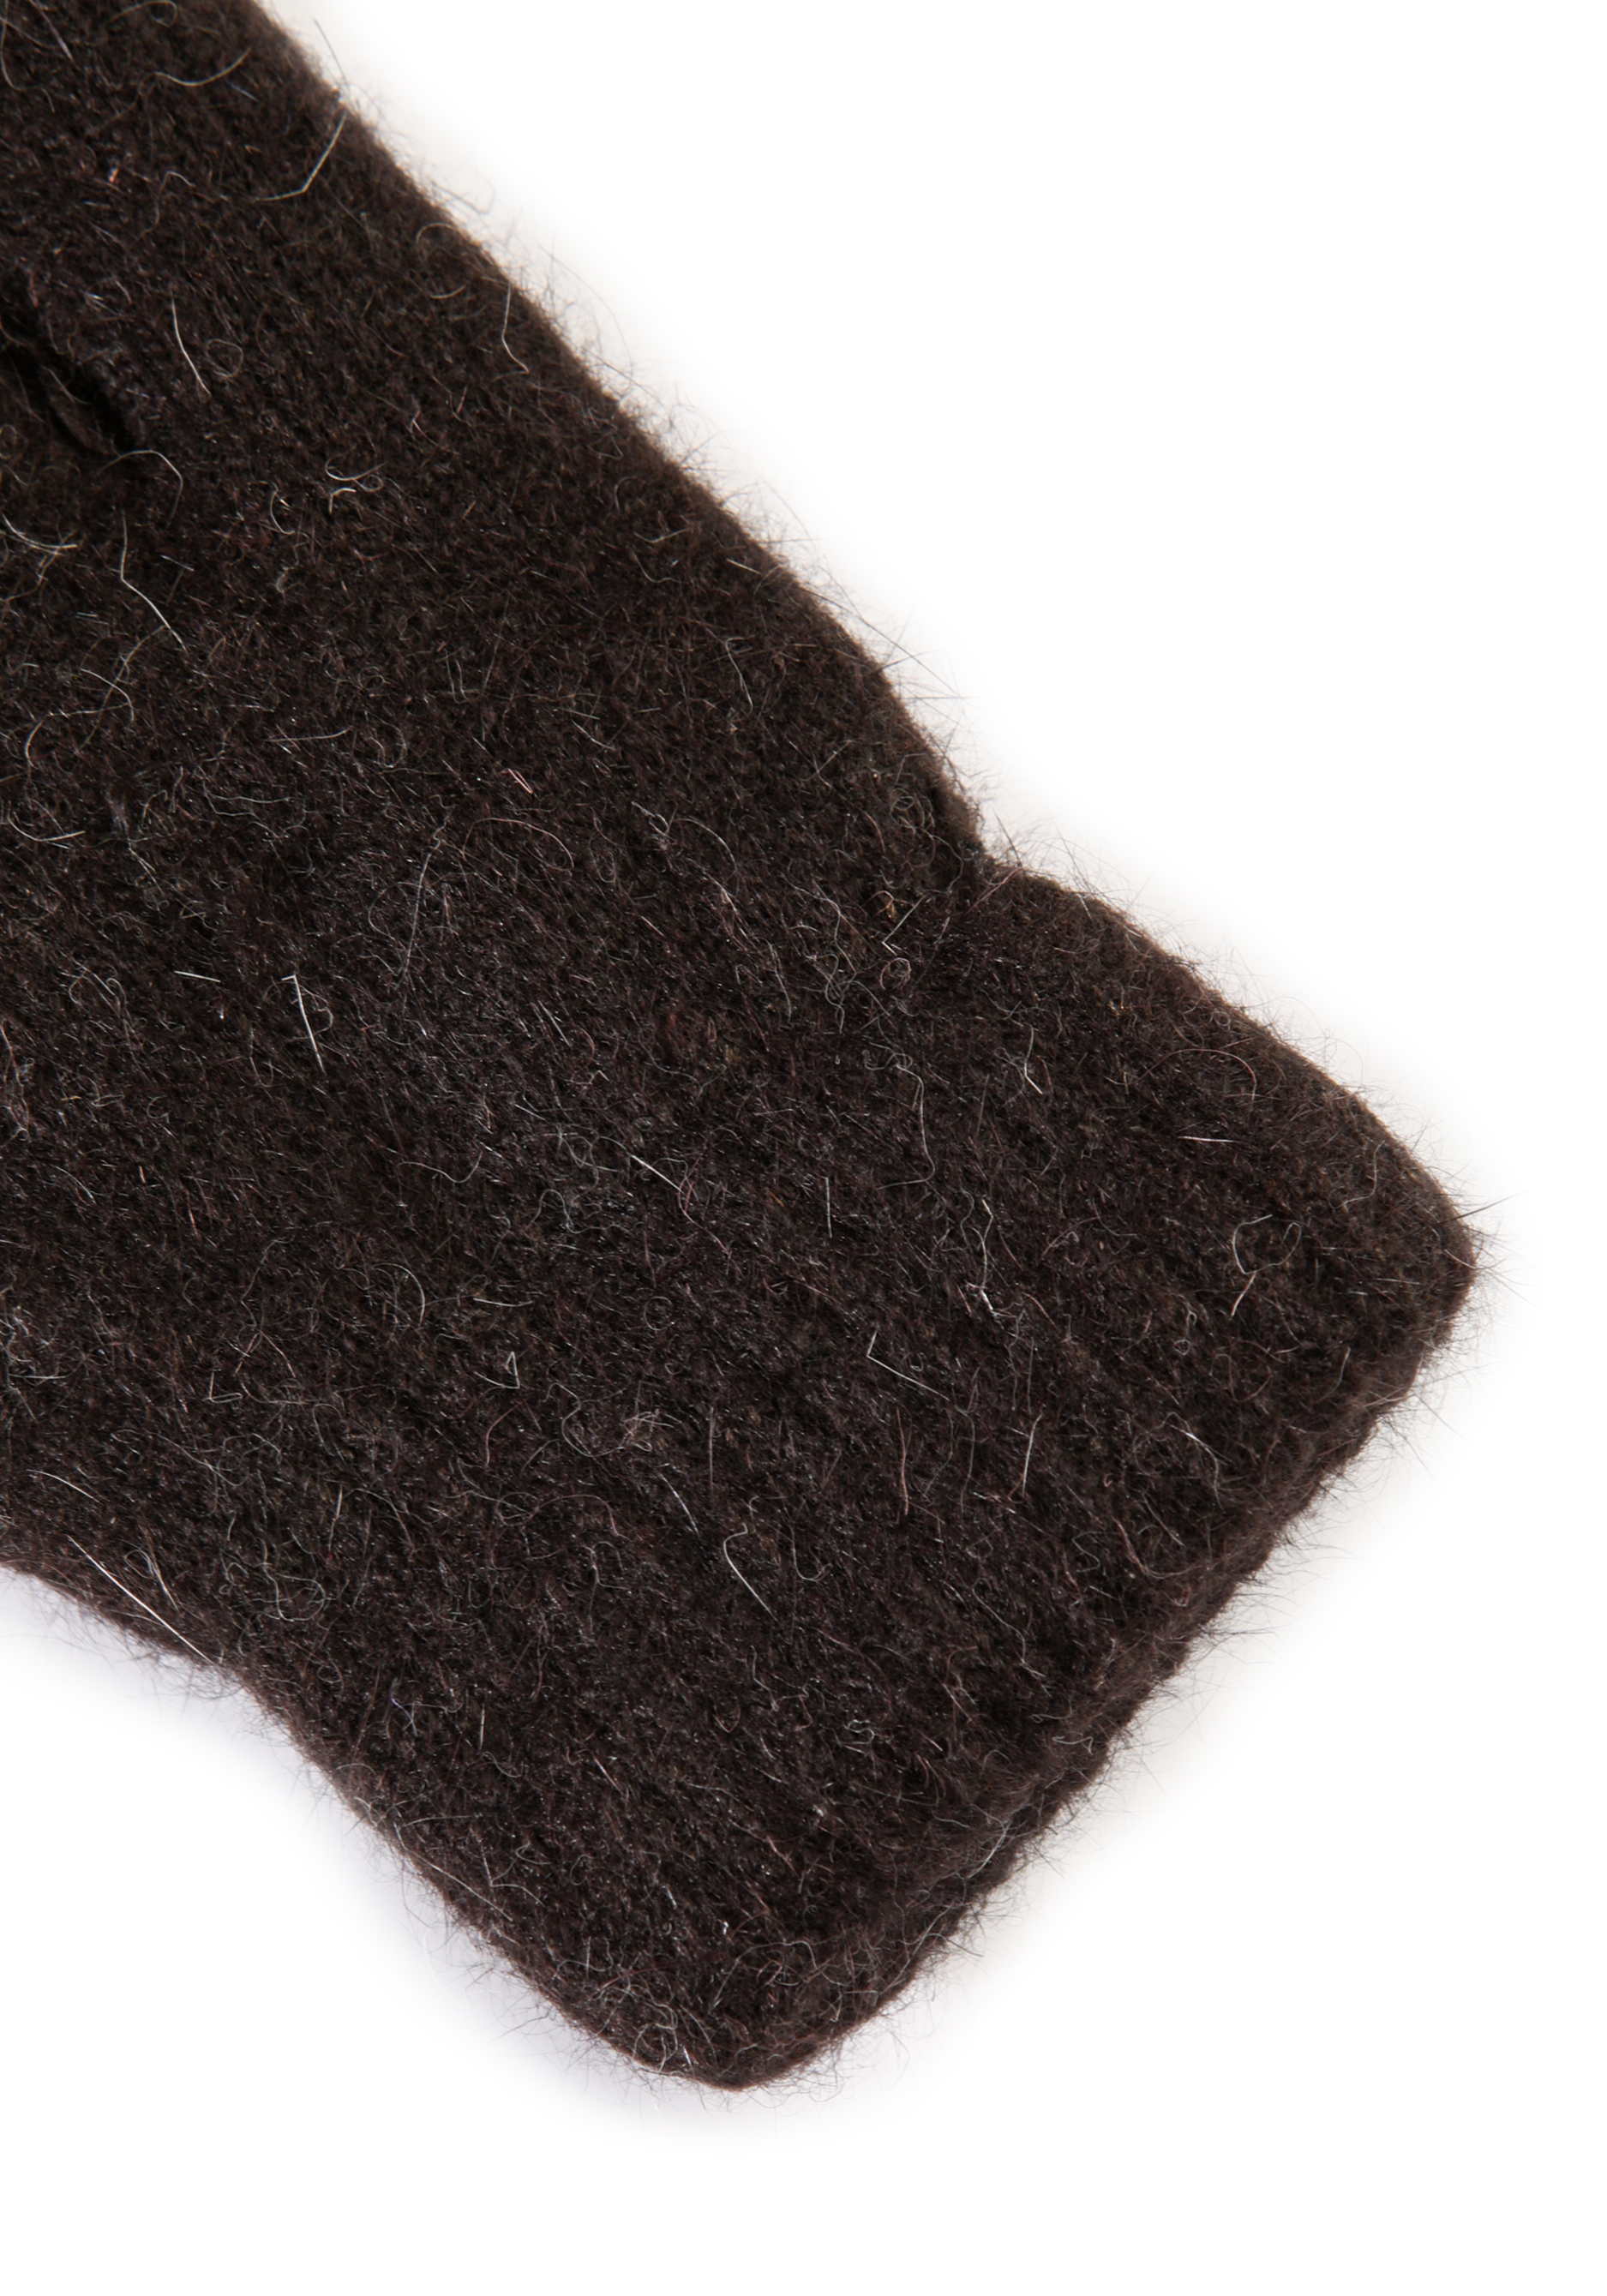 Варежки шерстяные «Максимальное тепло», размер универсальный, цвет коричневый - фото 6